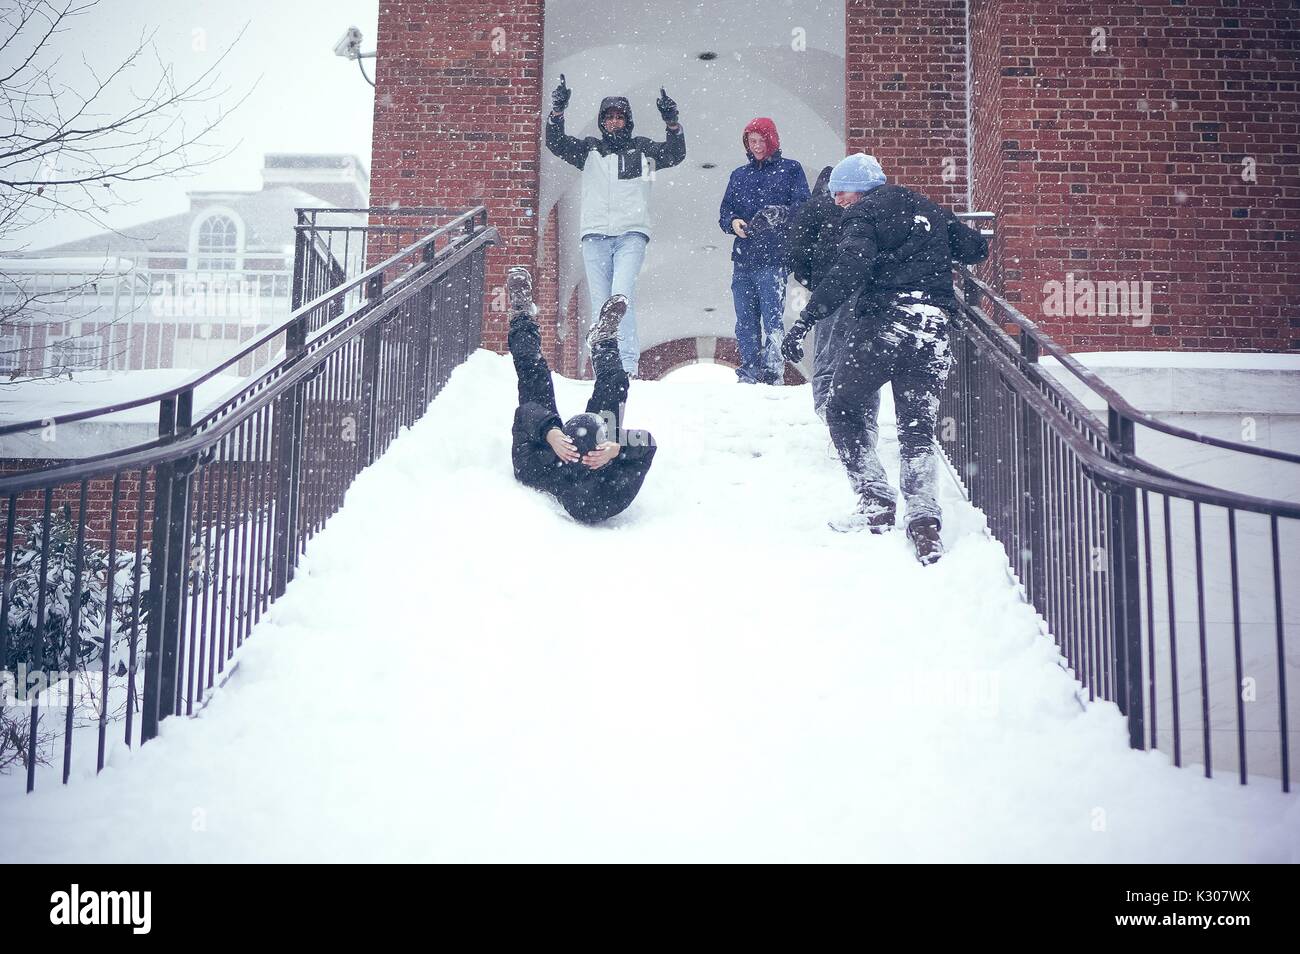 Un élève glisse vers l'arrière avec jambes en l'air et les bras autour de sa tête, en bas d'une escalier de neige tandis que les amis dans la neige de l'acclamer de haut de l'escalier, au cours d'un jour de neige à la Johns Hopkins University, Baltimore, Maryland, 2016. Banque D'Images